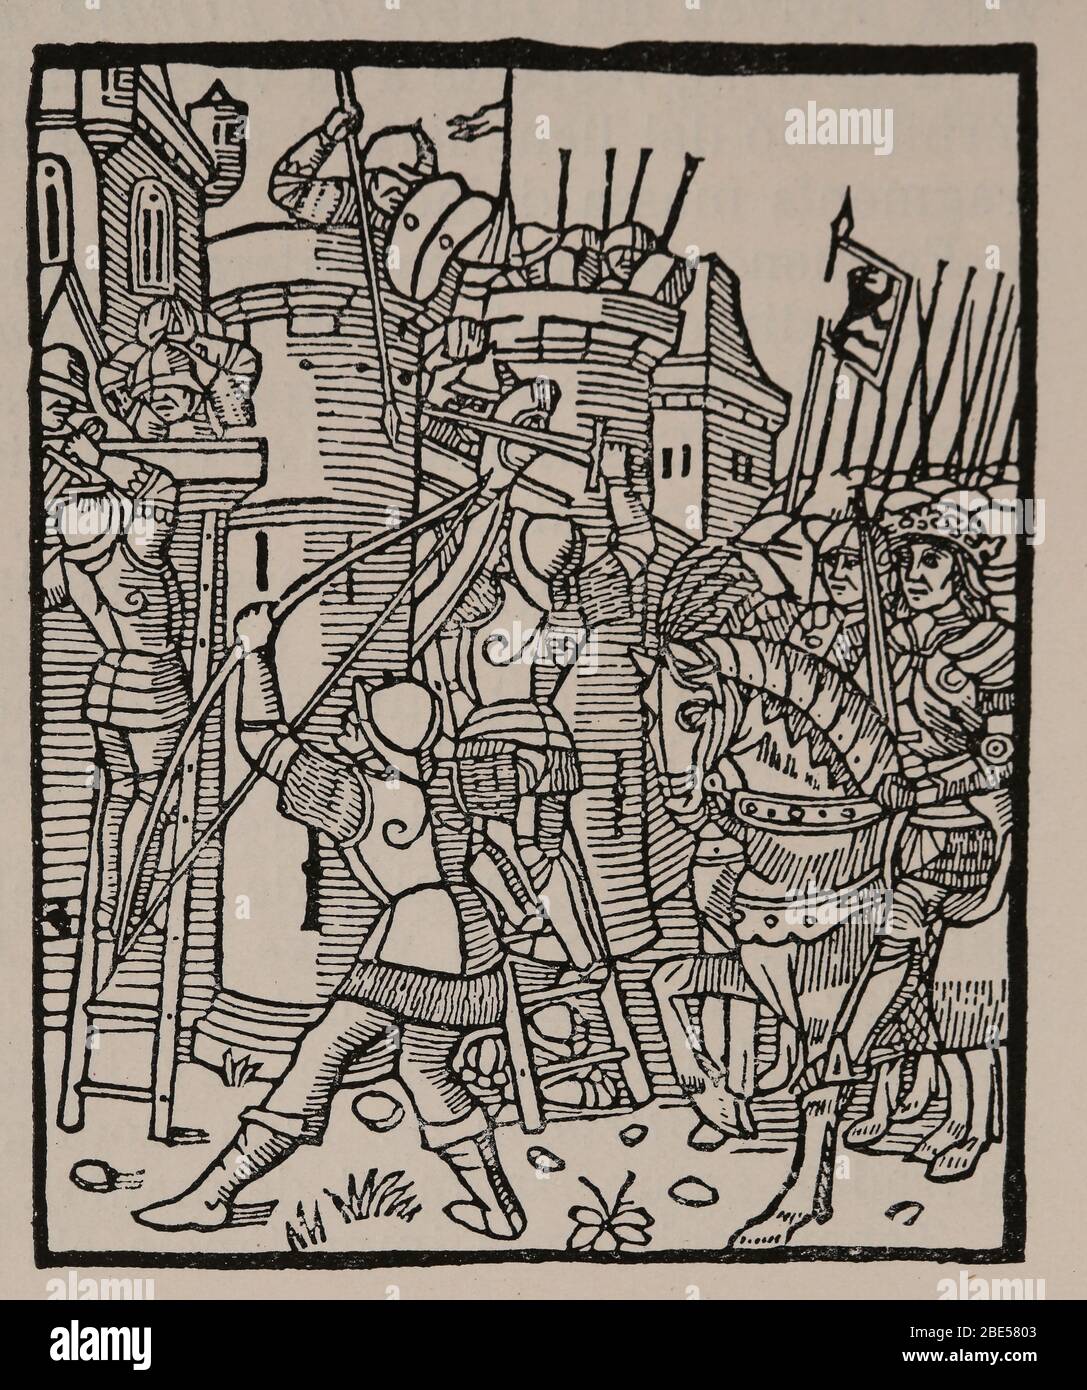 Szenen des Krieges. 15. Jahrhundert. Illustration des "Gefängnis der Liebe" des kastilischen Schriftstellers Diego de San Pedro (1437-1498). Stockfoto